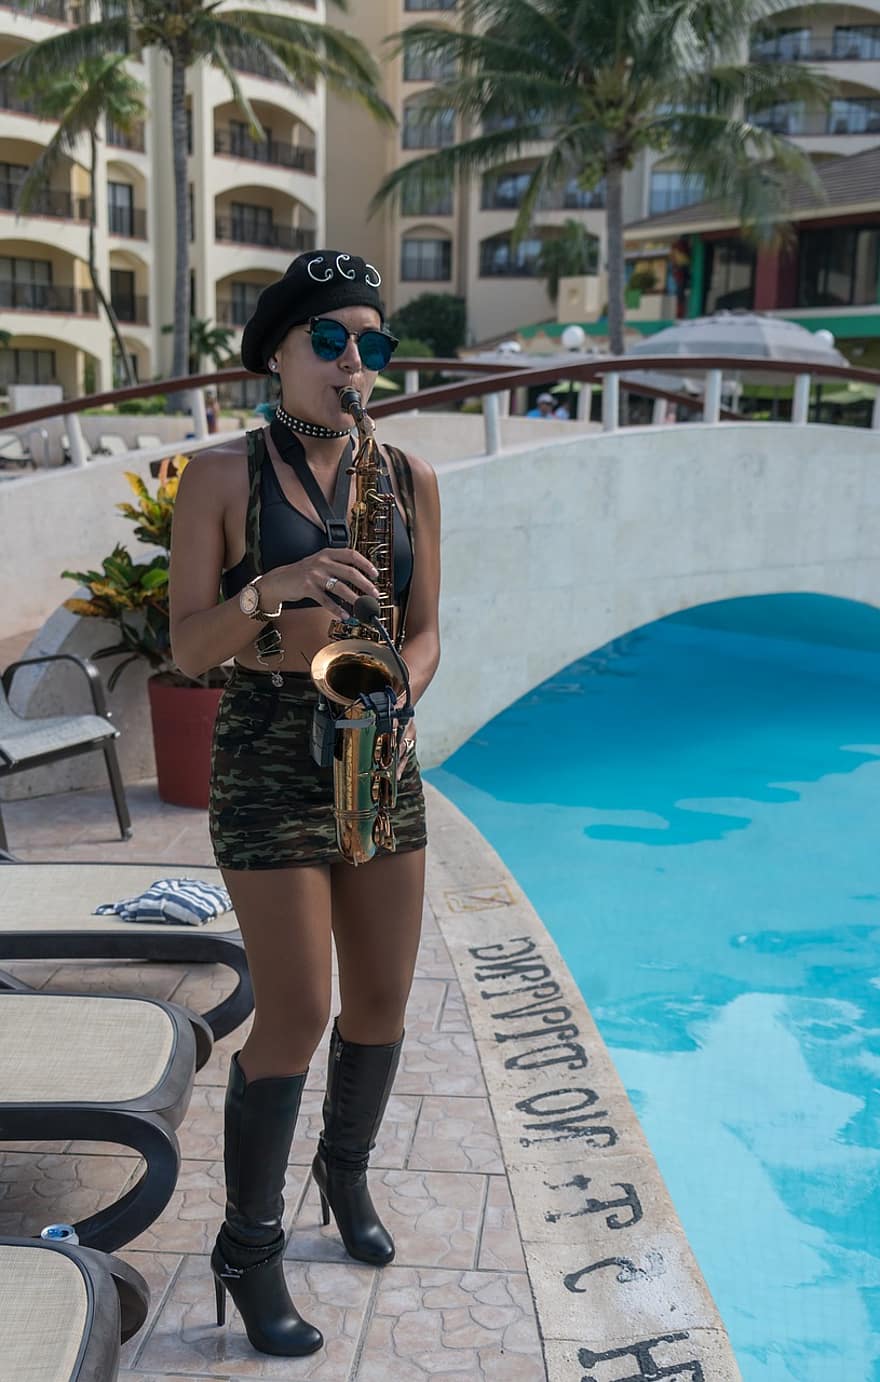 saxofonista, música, desempenho, ao lado da piscina, festa, pessoas